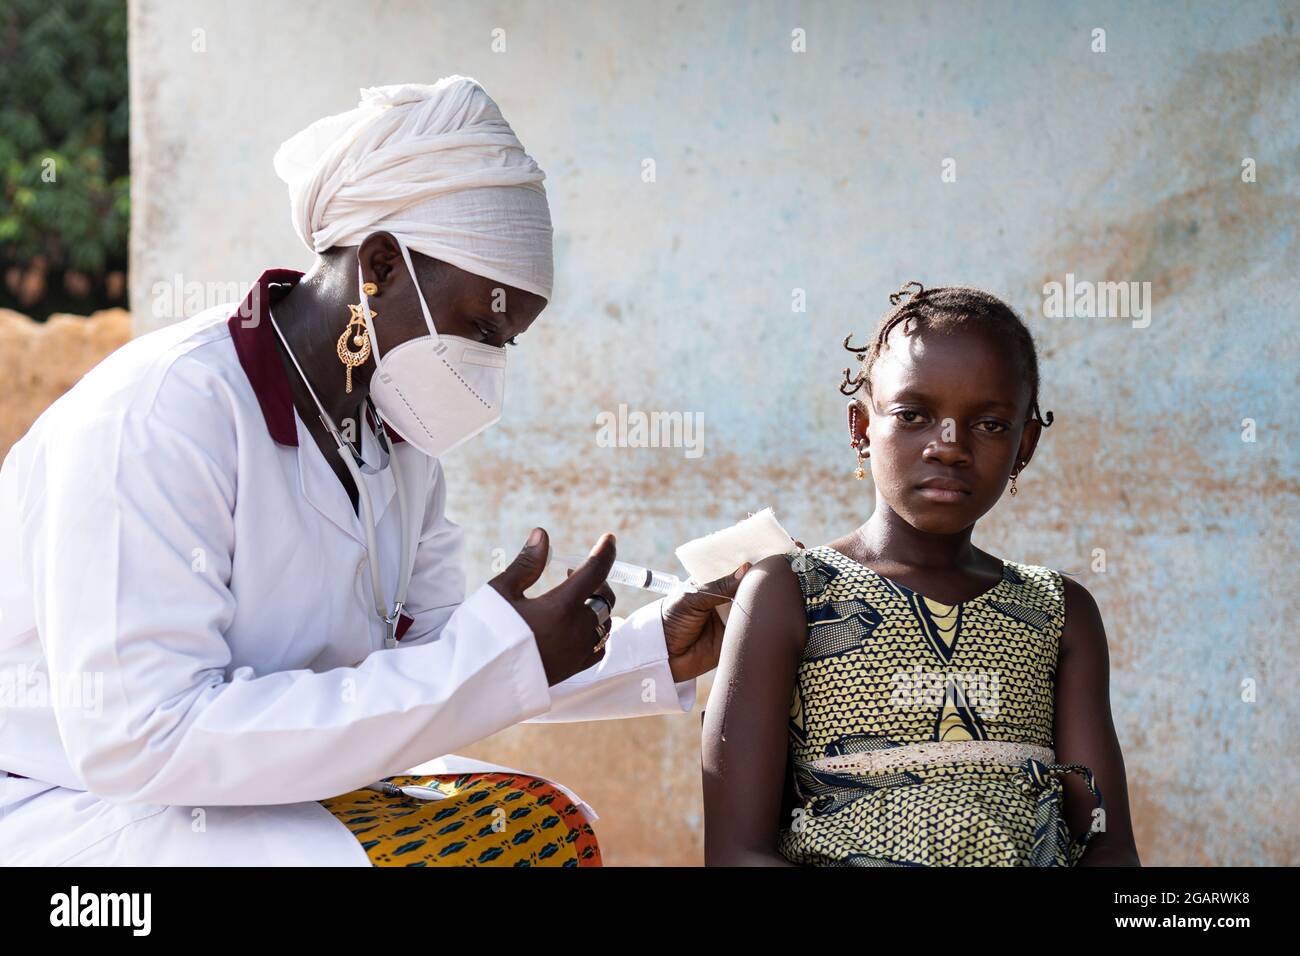 In questa immagine, una piccola studentessa africana tesa sta aspettando che il suo pediatra inietta una dose di vaccino nel suo braccio Foto Stock